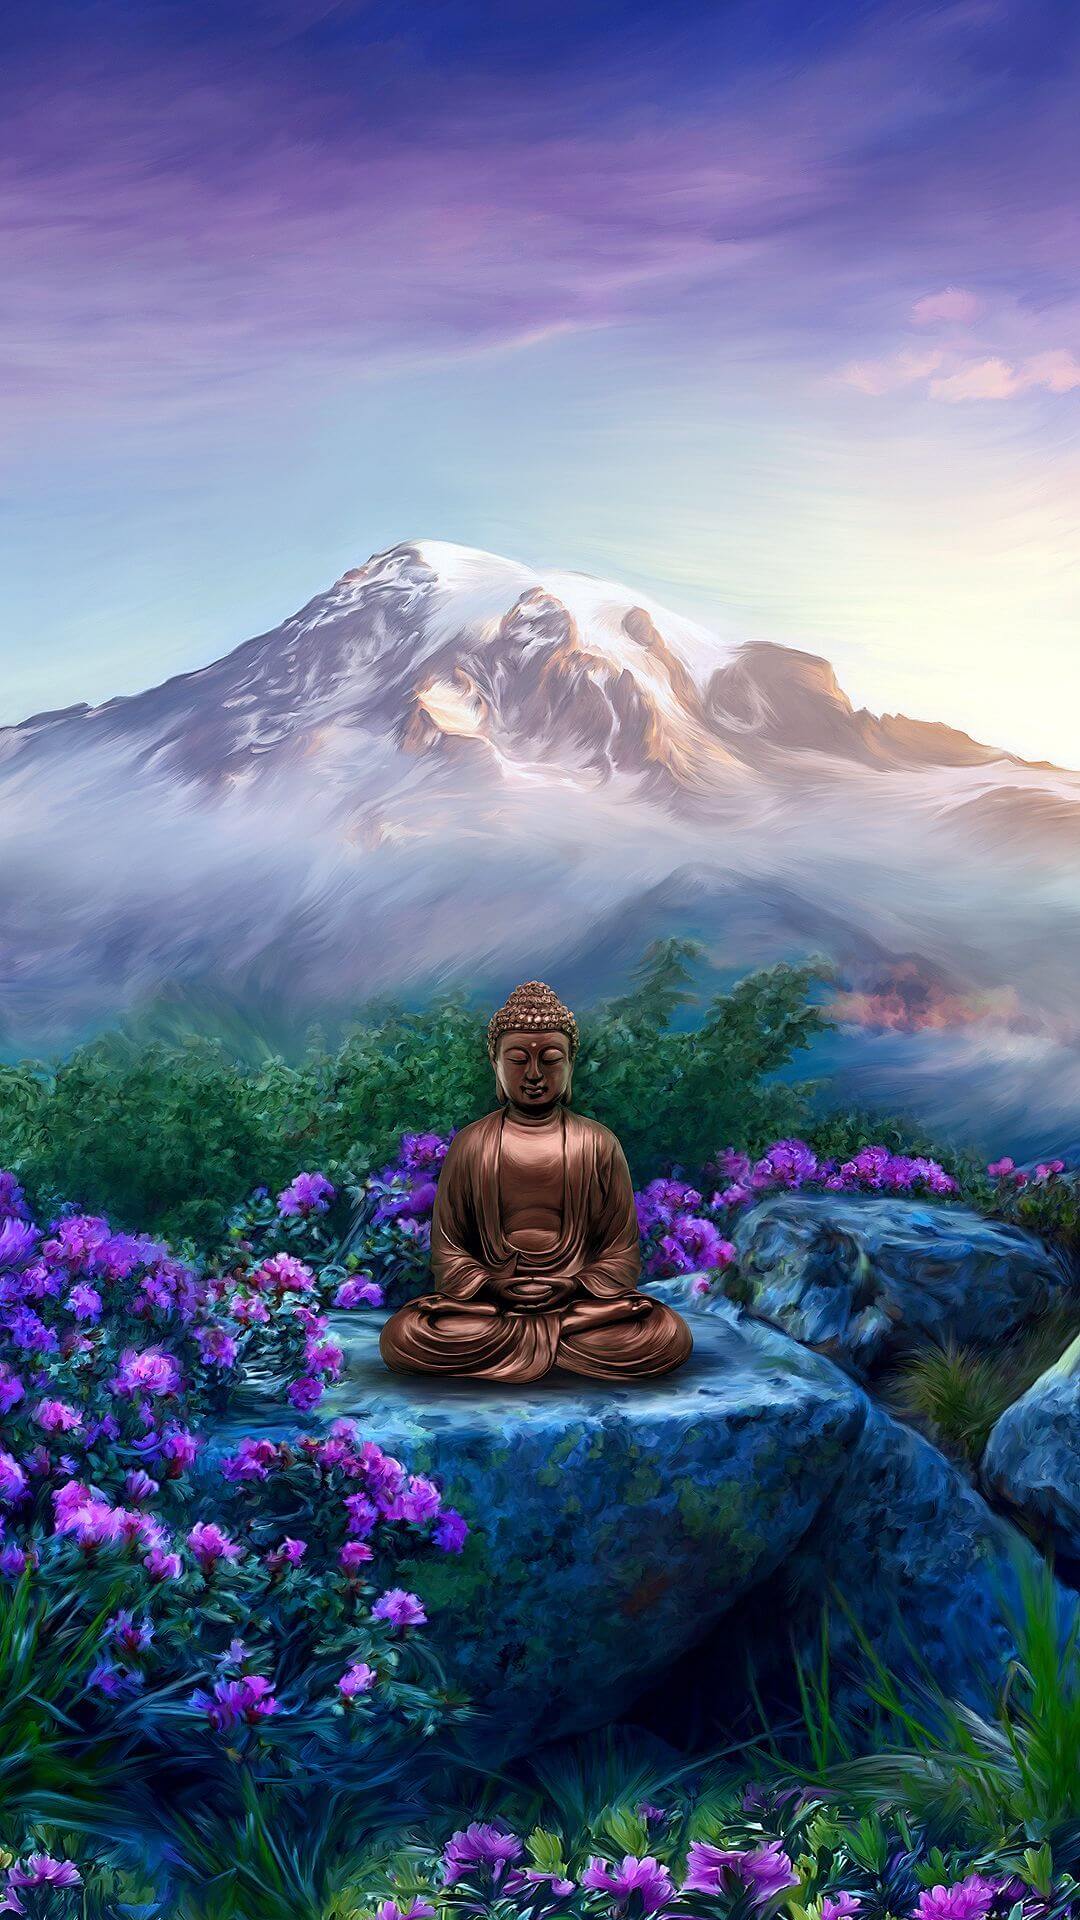 Phật 3D: Tận hưởng những khoảnh khắc đầy phê phán với những bức tượng Phật 3D sinh động và tràn đầy sức sống. Bạn sẽ xúc động trước tinh hoa nghệ thuật chạm khắc các tác phẩm tuyệt đẹp này, câu chuyện đức tin rõ ràng trong từng nét vẽ tuyệt mỹ.